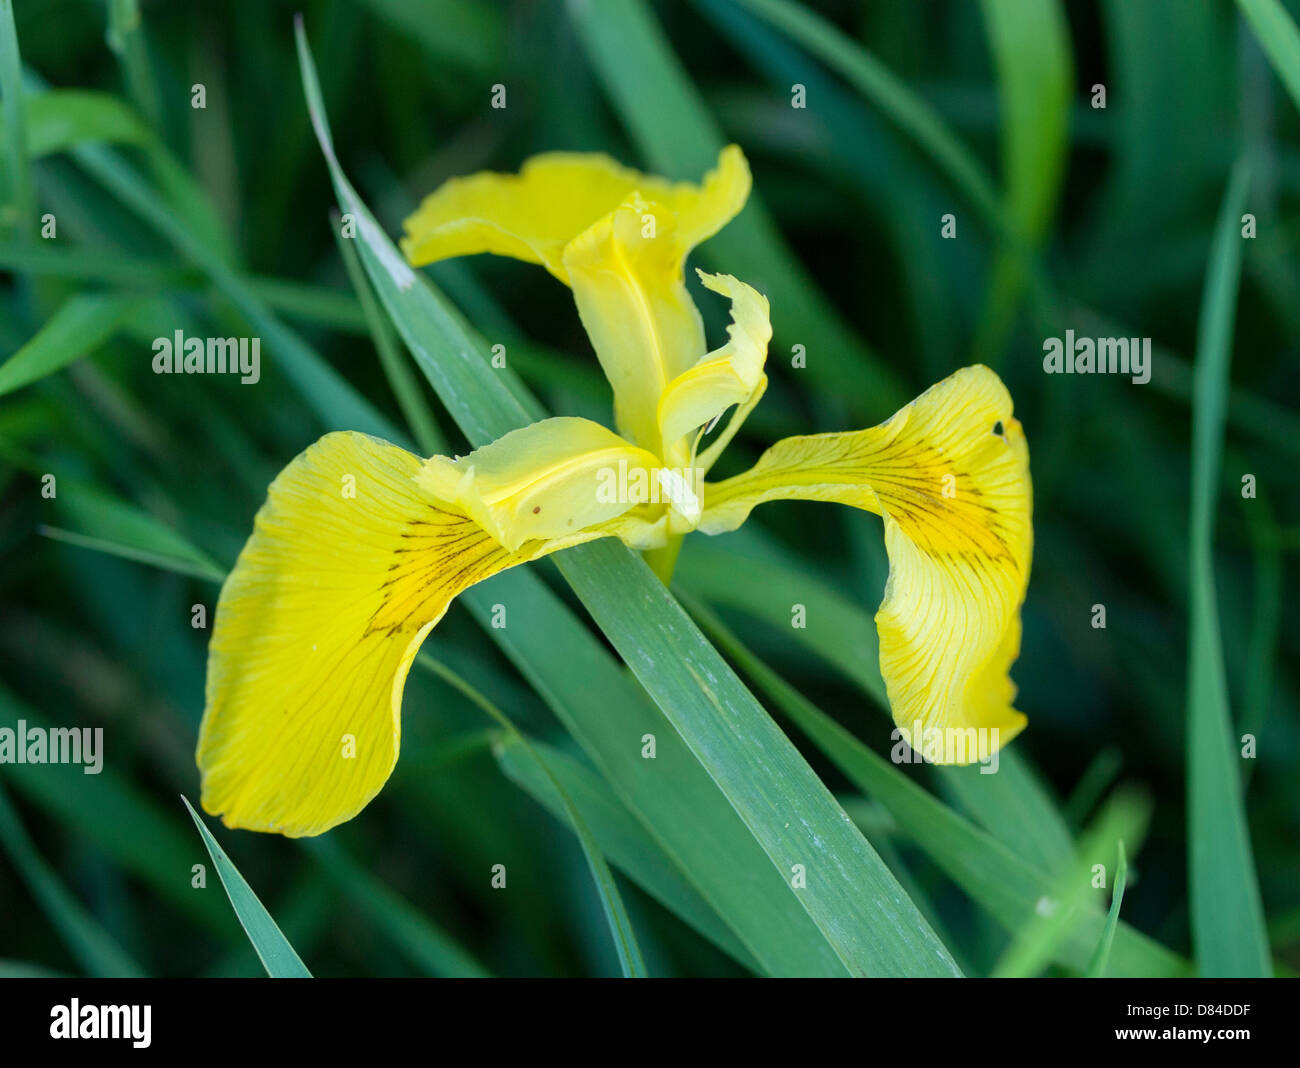 Iris, Iris sp Stock Photo - Alamy